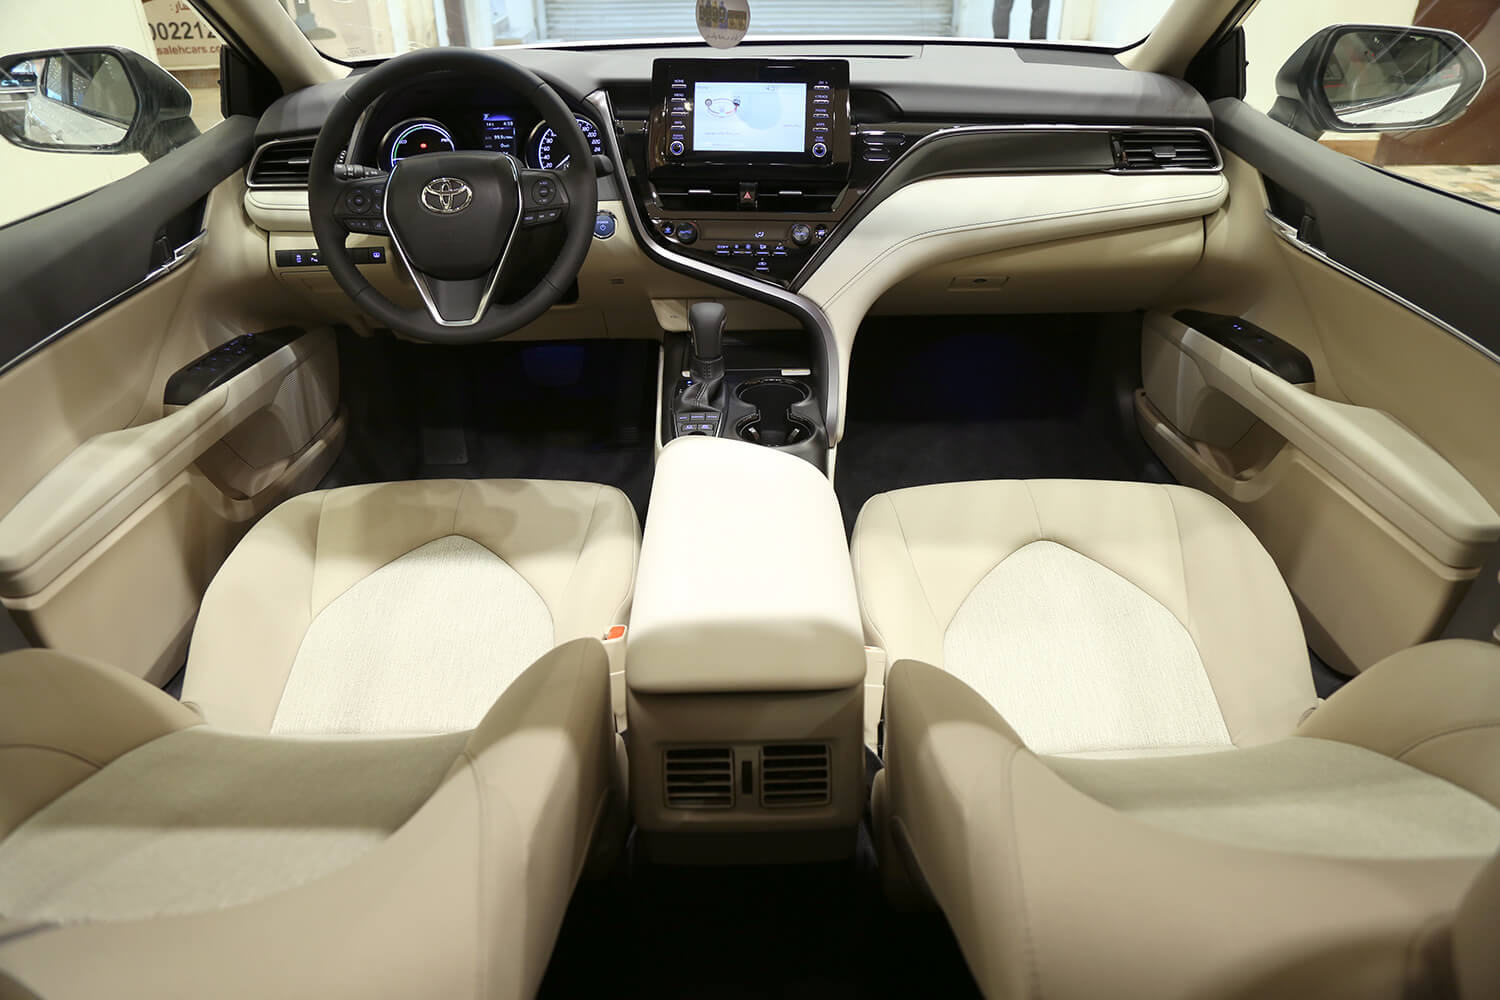 2022 camry interior